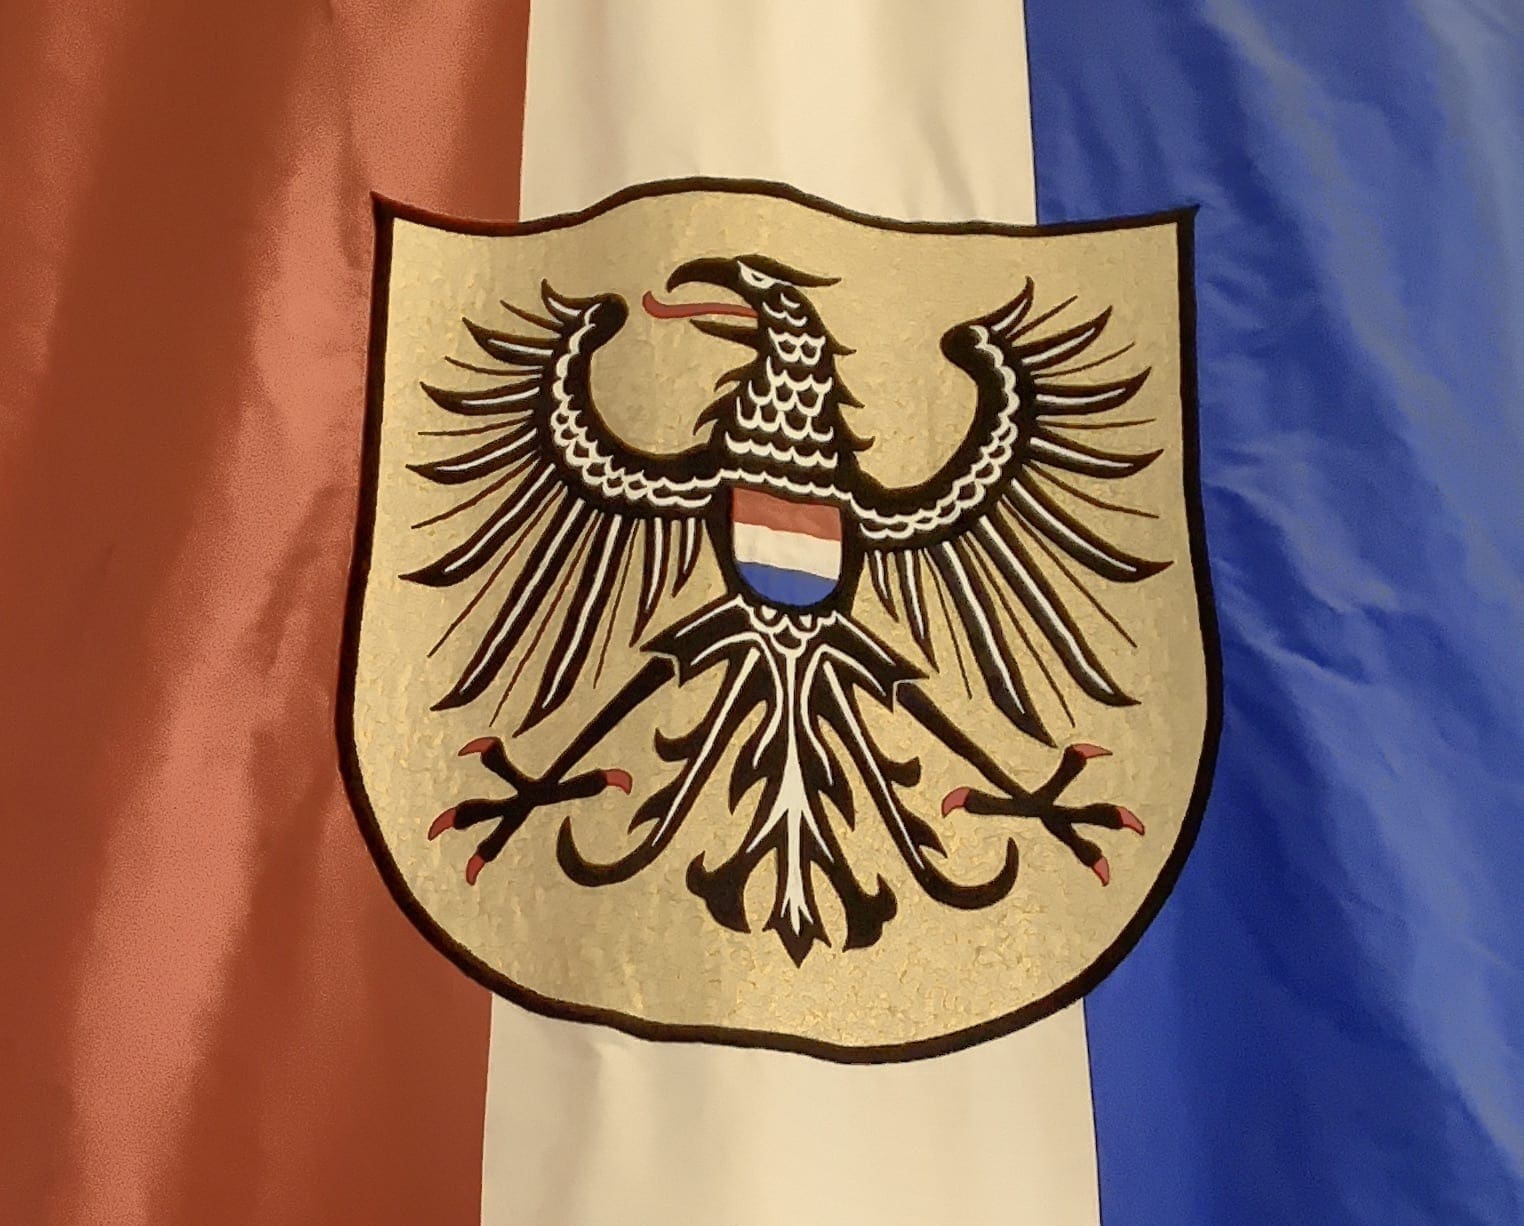 Heilbronn flag with coat of arms